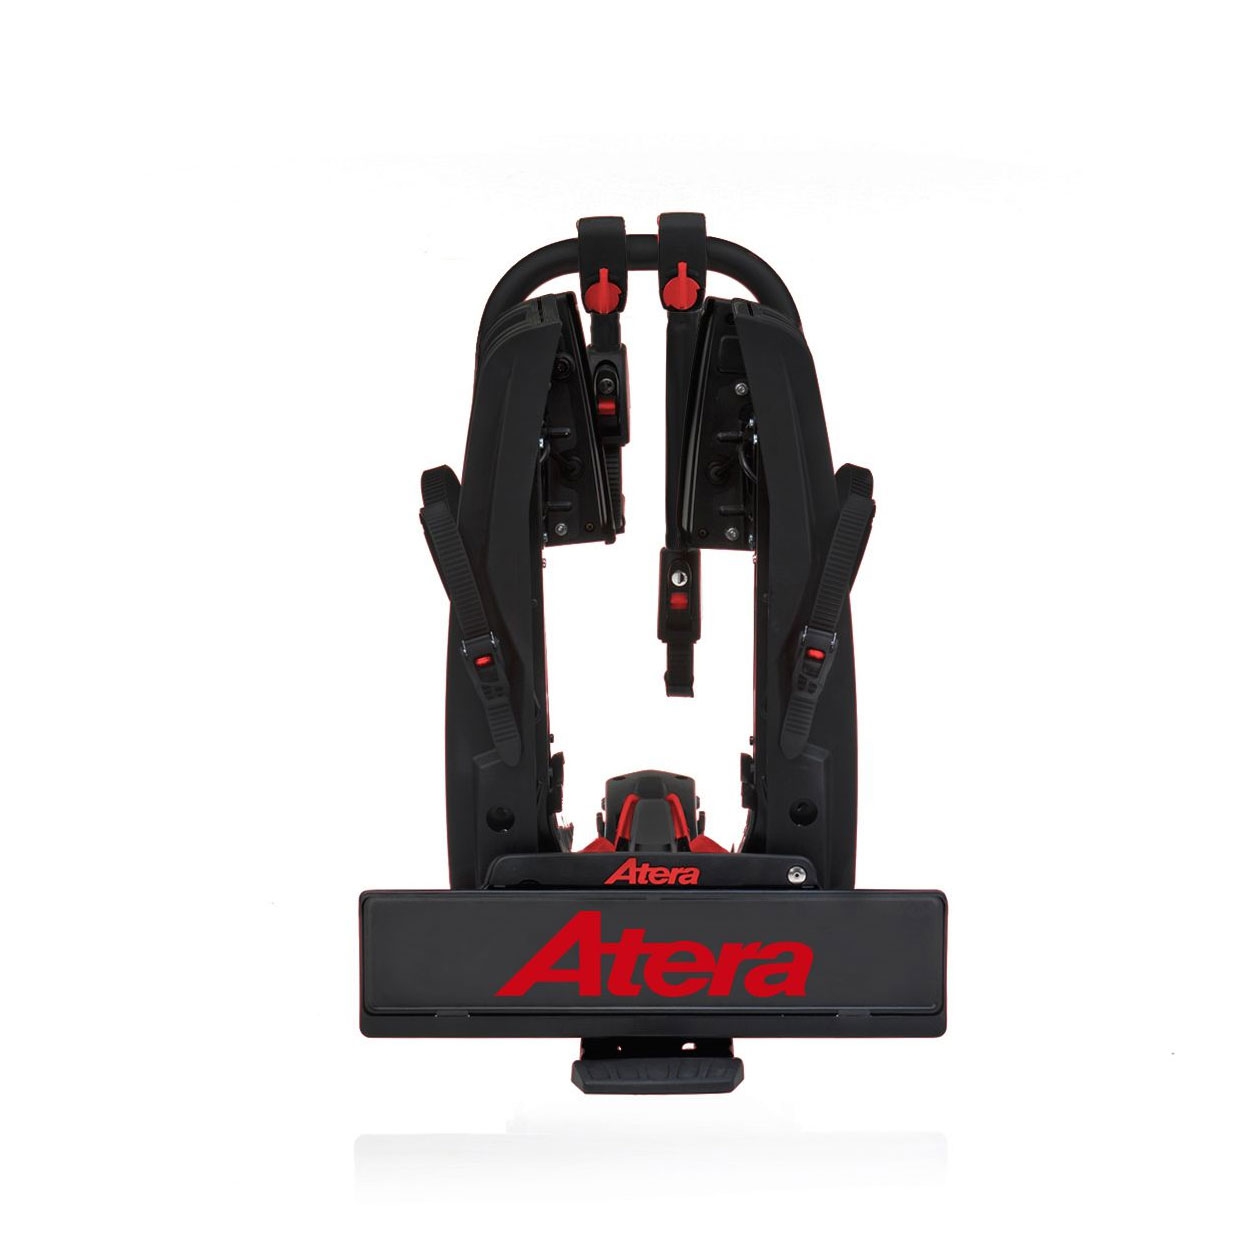 ATERA GENIO PRO 022784 Advanced Fahrradtraeger 2er faltbar erweiterbar- Limitierte Auflage zum 60- Geburtstag von Atera - Red Edition- Fahrradtraeger fuer die Anhaengerkupplung von ATERA aus dem Allgaeu